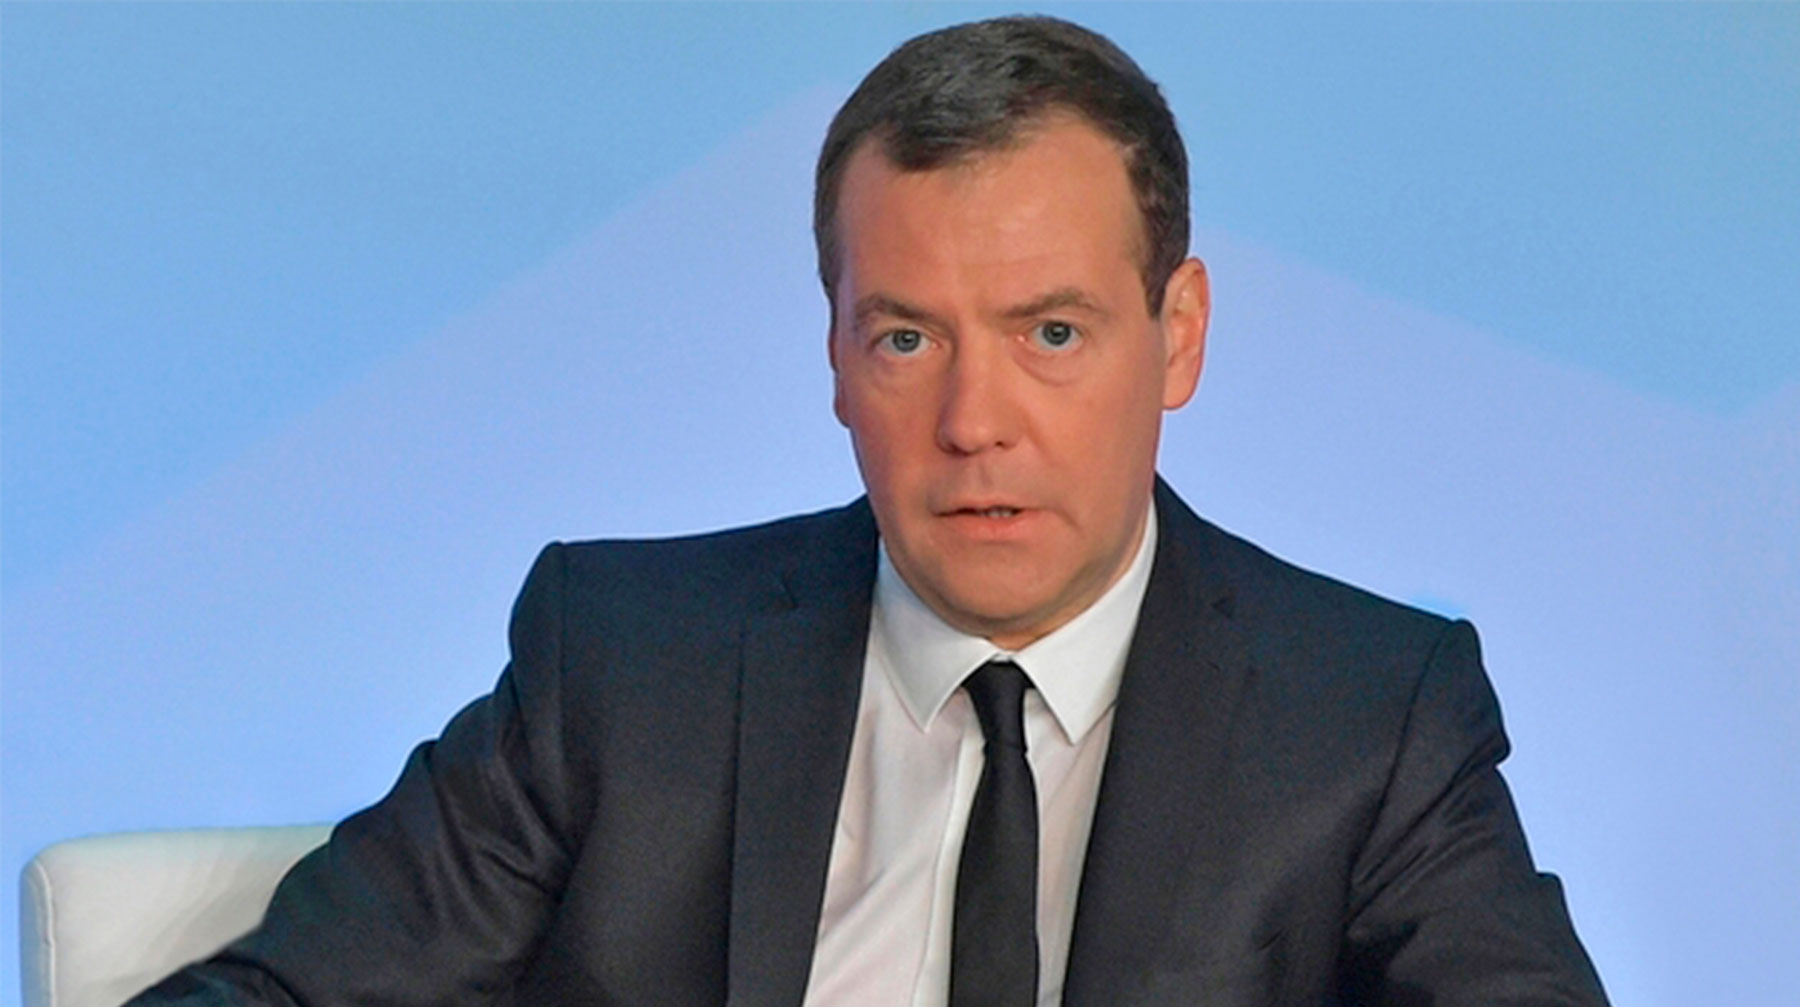 Также премьер-министр сообщил, что интеграция России и Белоруссии требует рутинной работы, а не разговоров о названии валюты Премьер-министр РФ Дмитрий Медведев